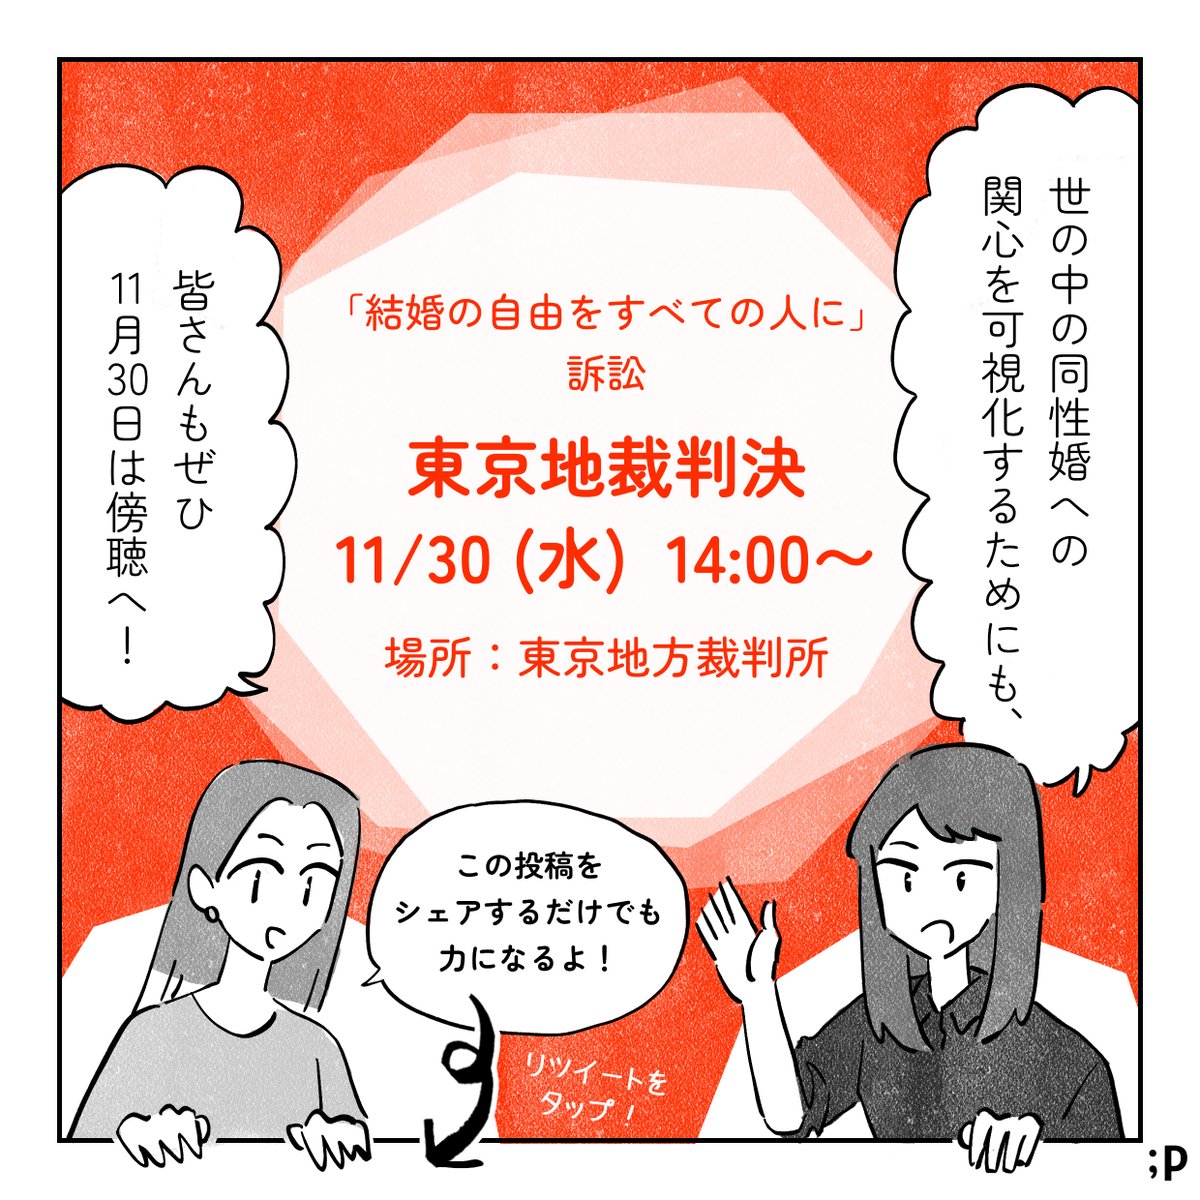 【拡散して応援の声を届けましょう🏳️‍🌈】
11月30日は「結婚の自由をすべての人に」訴訟の東京地裁判決が出されます。これまでの裁判の道のりと、今回のポイントをマンガにまとめました。(2/3)
#結婚の自由をすべての人に #東京1130 